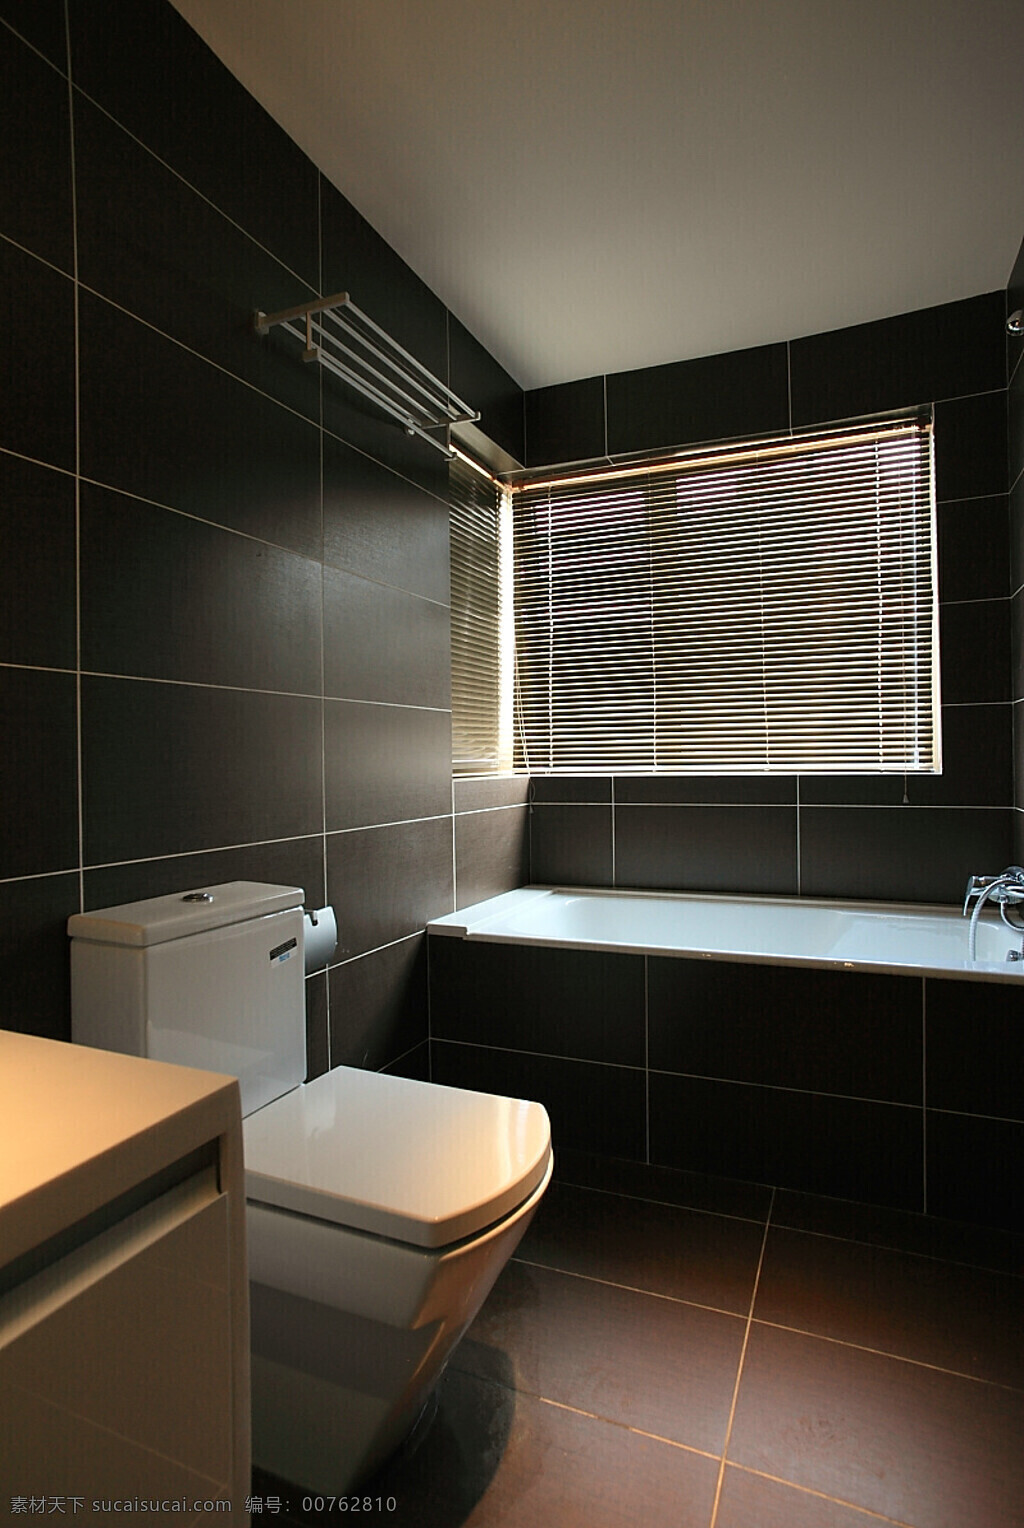 现代 浴室 深色 格子 背景 墙 室内装修 效果图 浴室装修 浅褐色地板 深色背景墙 白色桌面